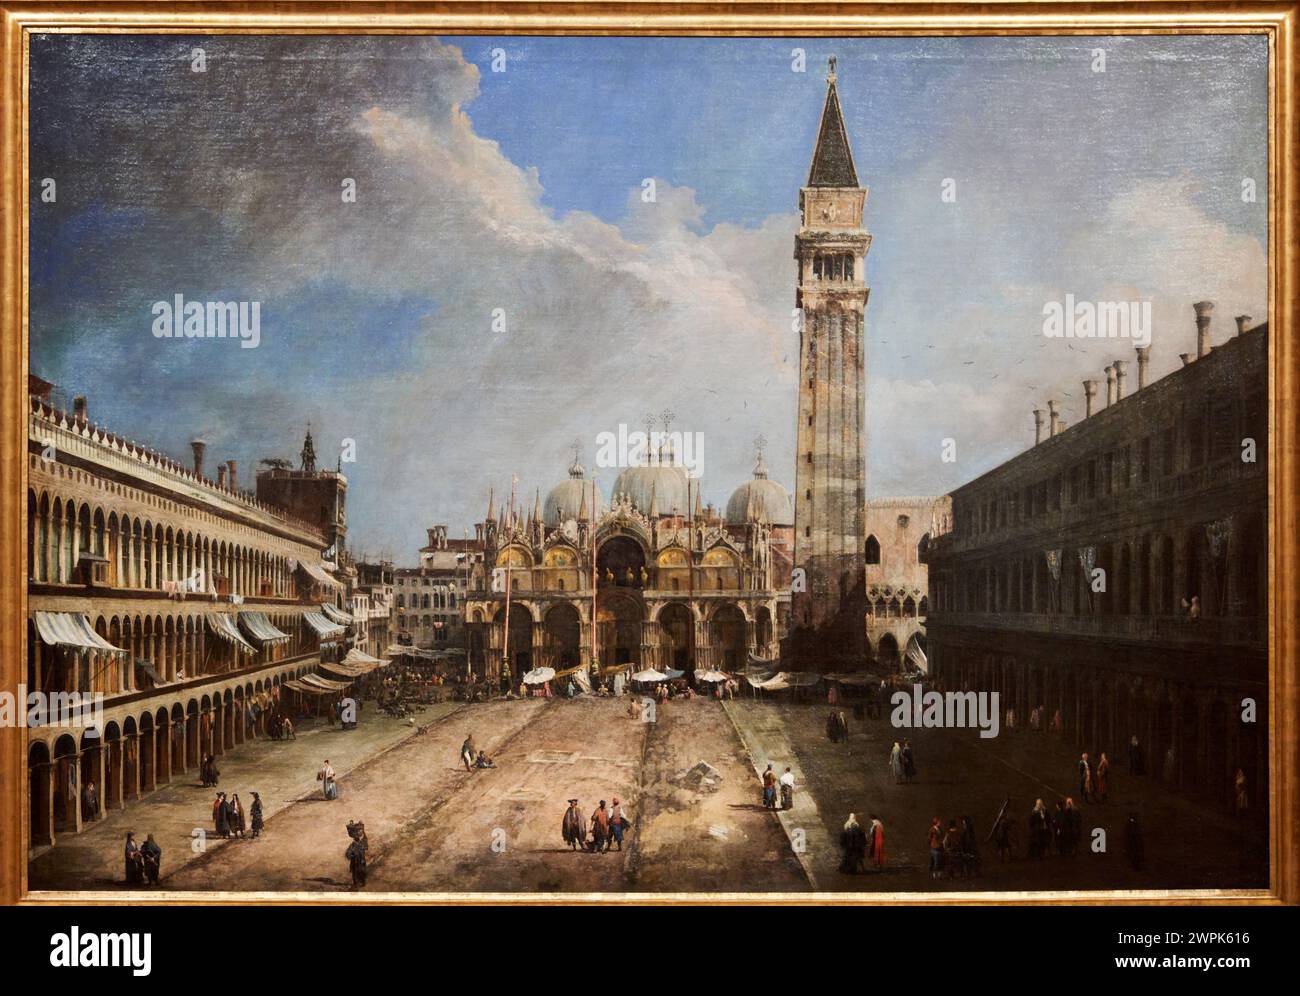 Canaletto, Venecia, 1697-1768, la Piazza San Marco à Venise, 1723-1724 Banque D'Images